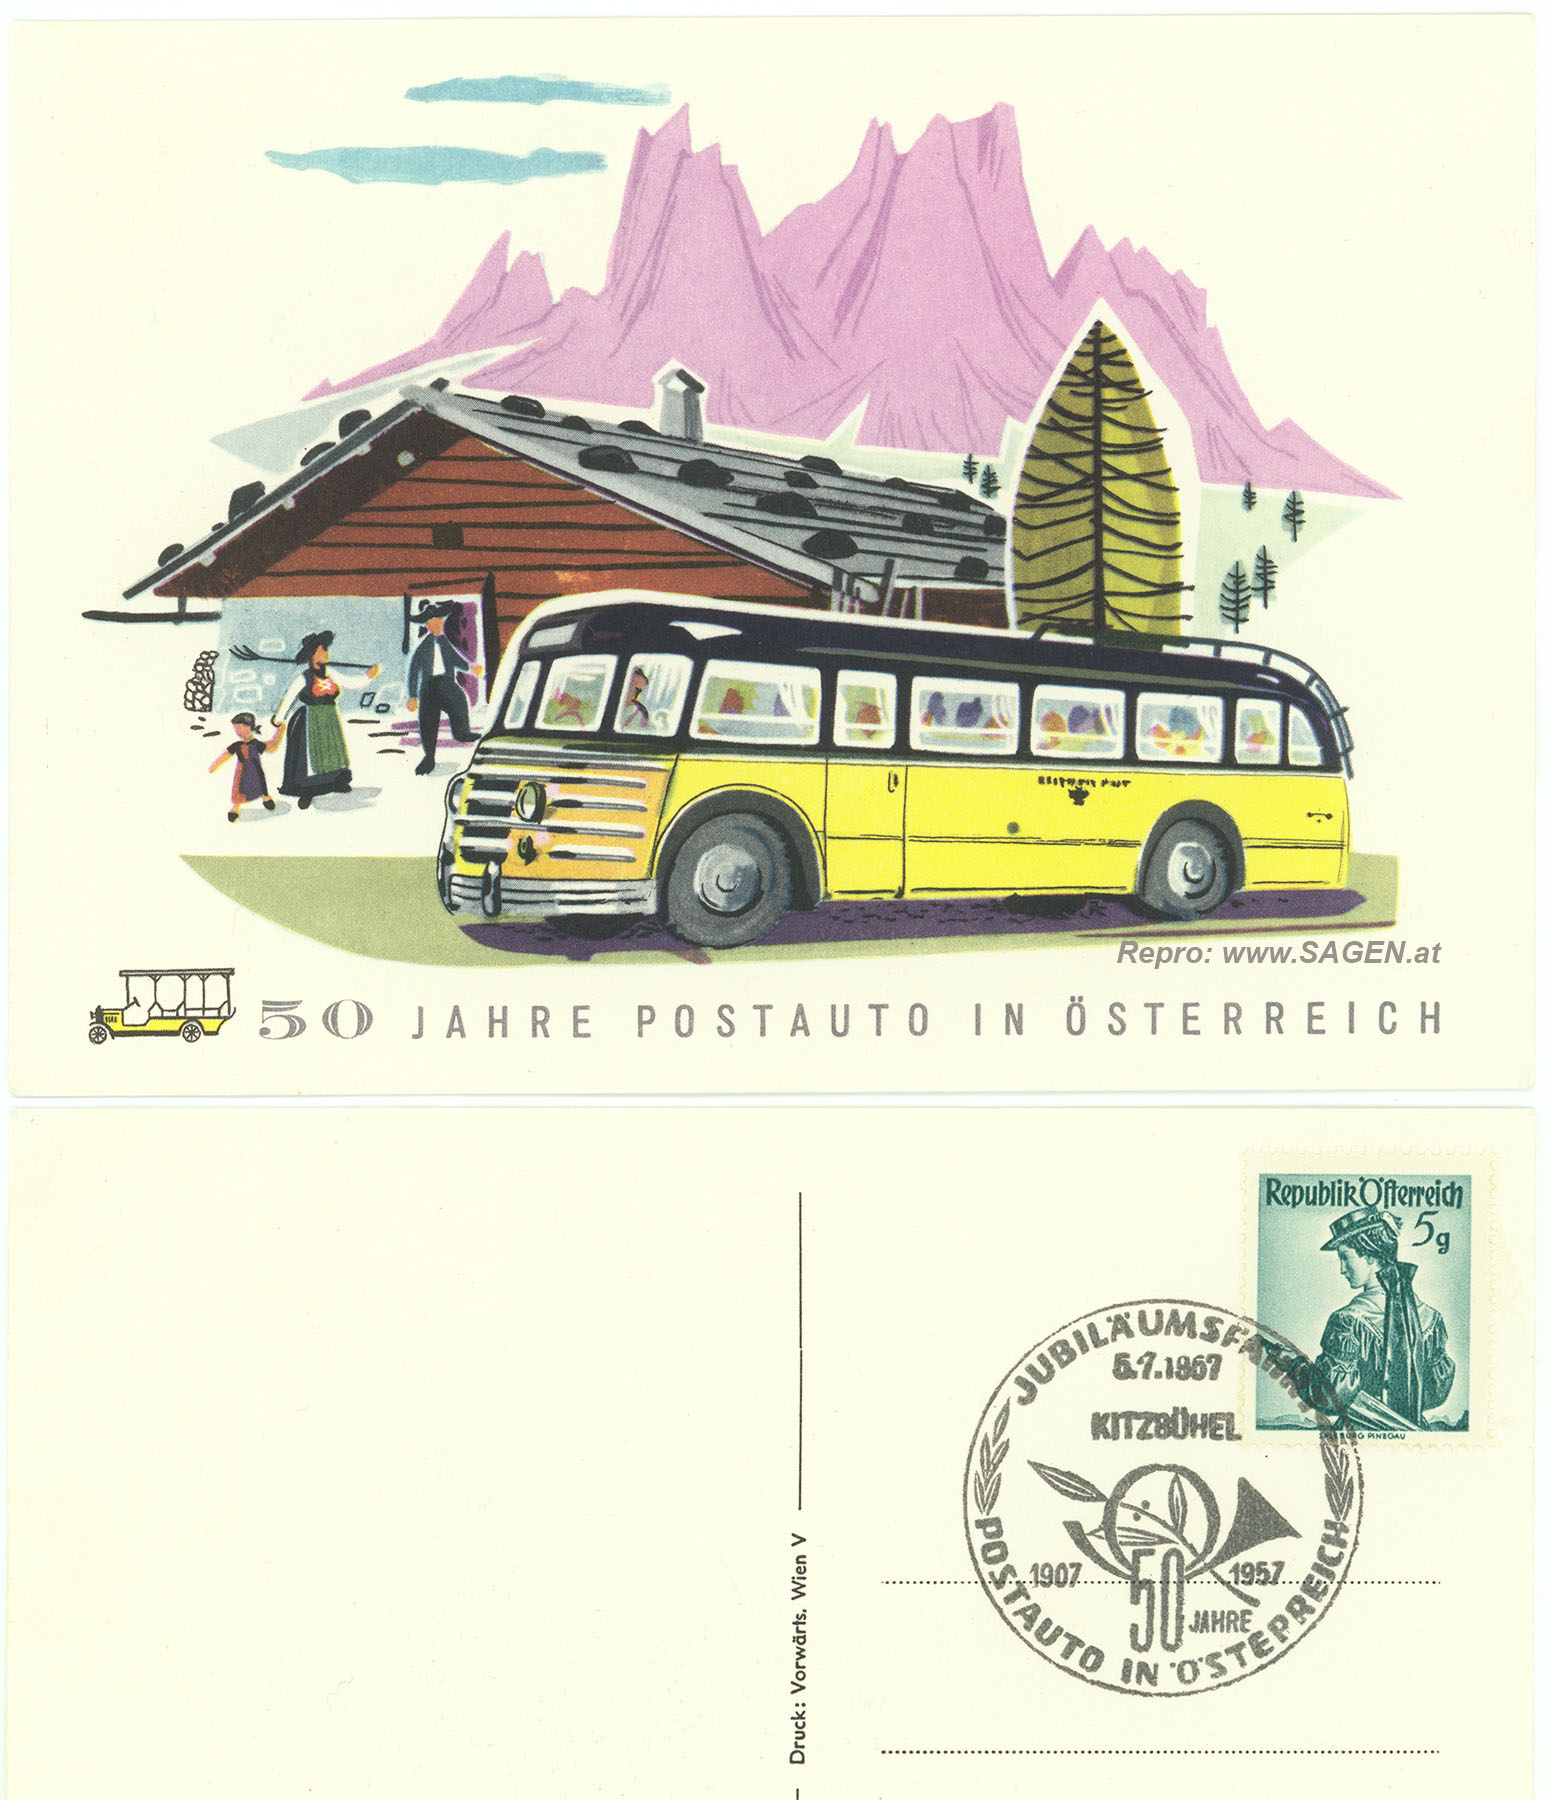 50 Jahre Postauto in Österreich